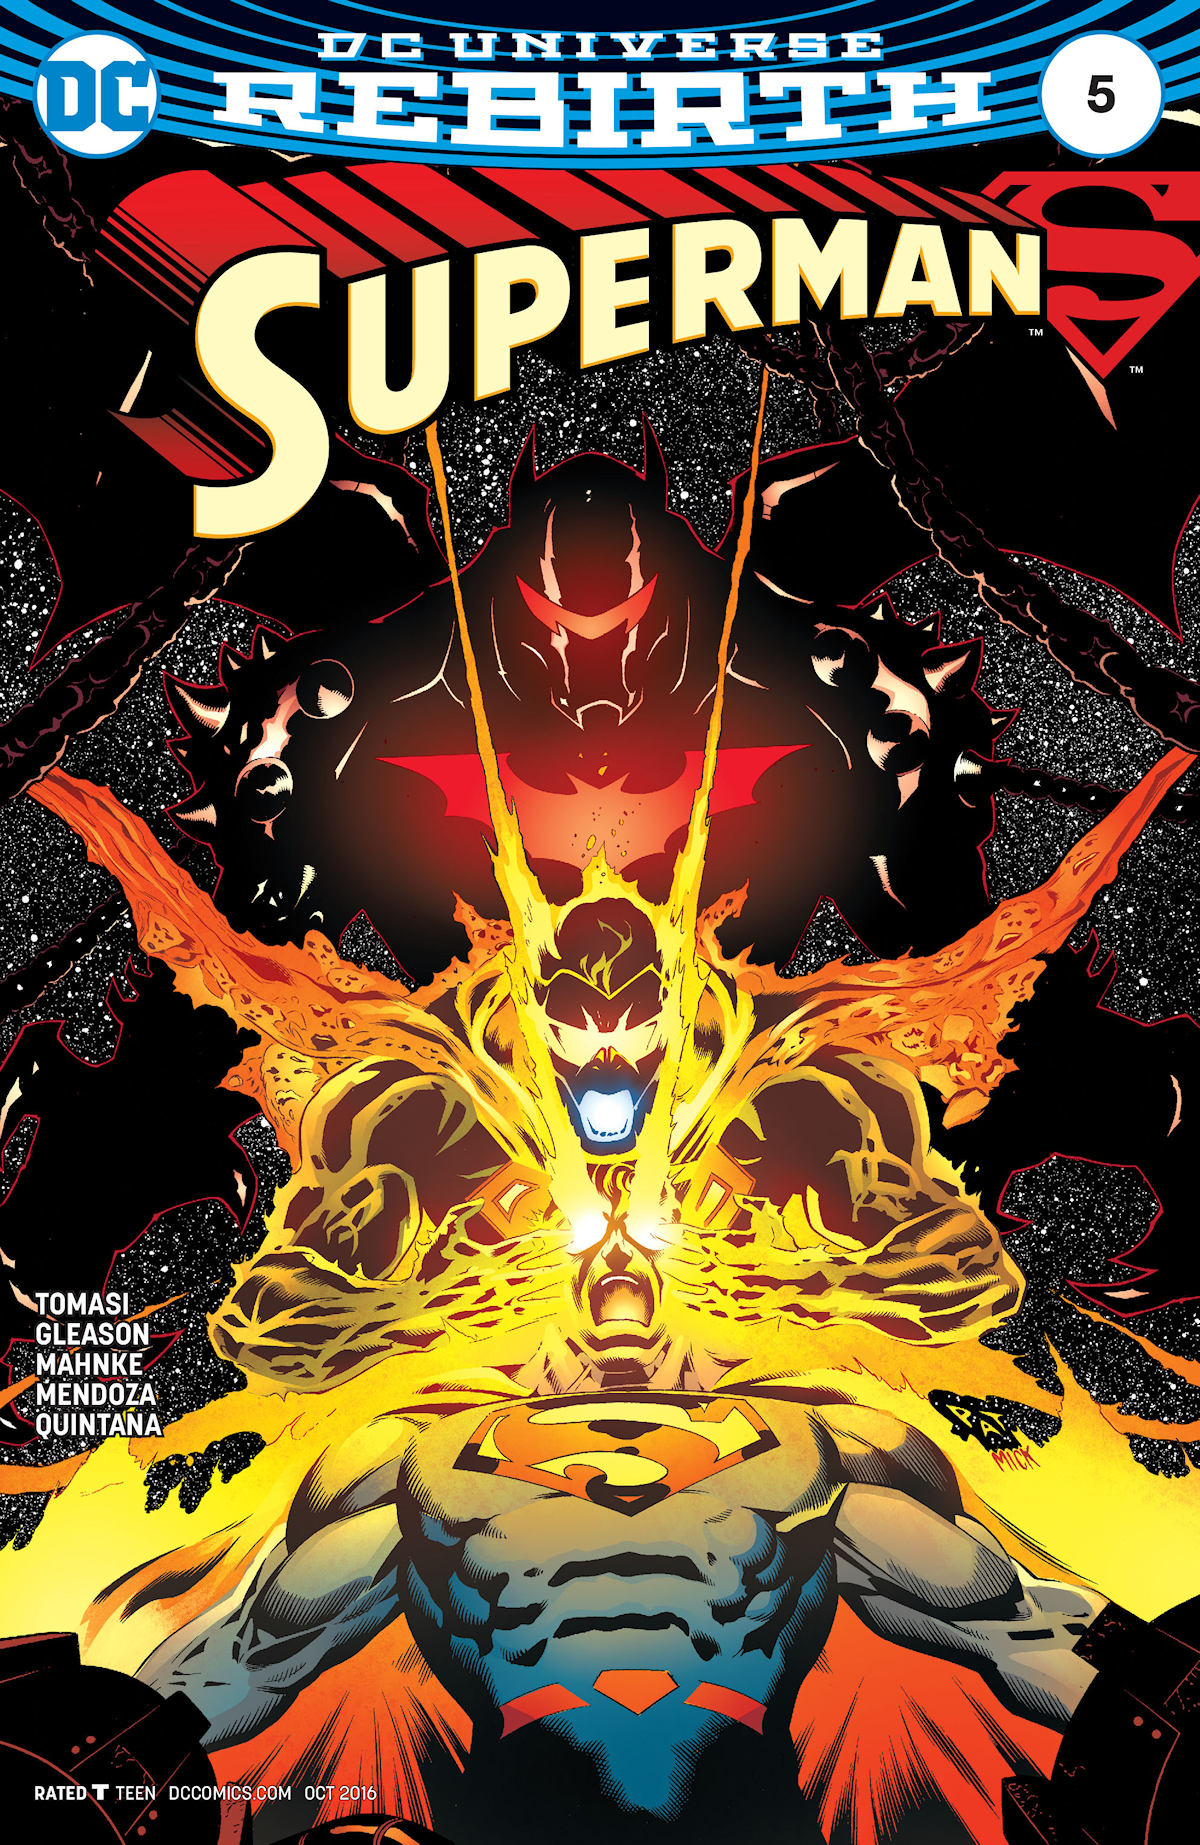 Superman Vol. 4 5 (Cover A)